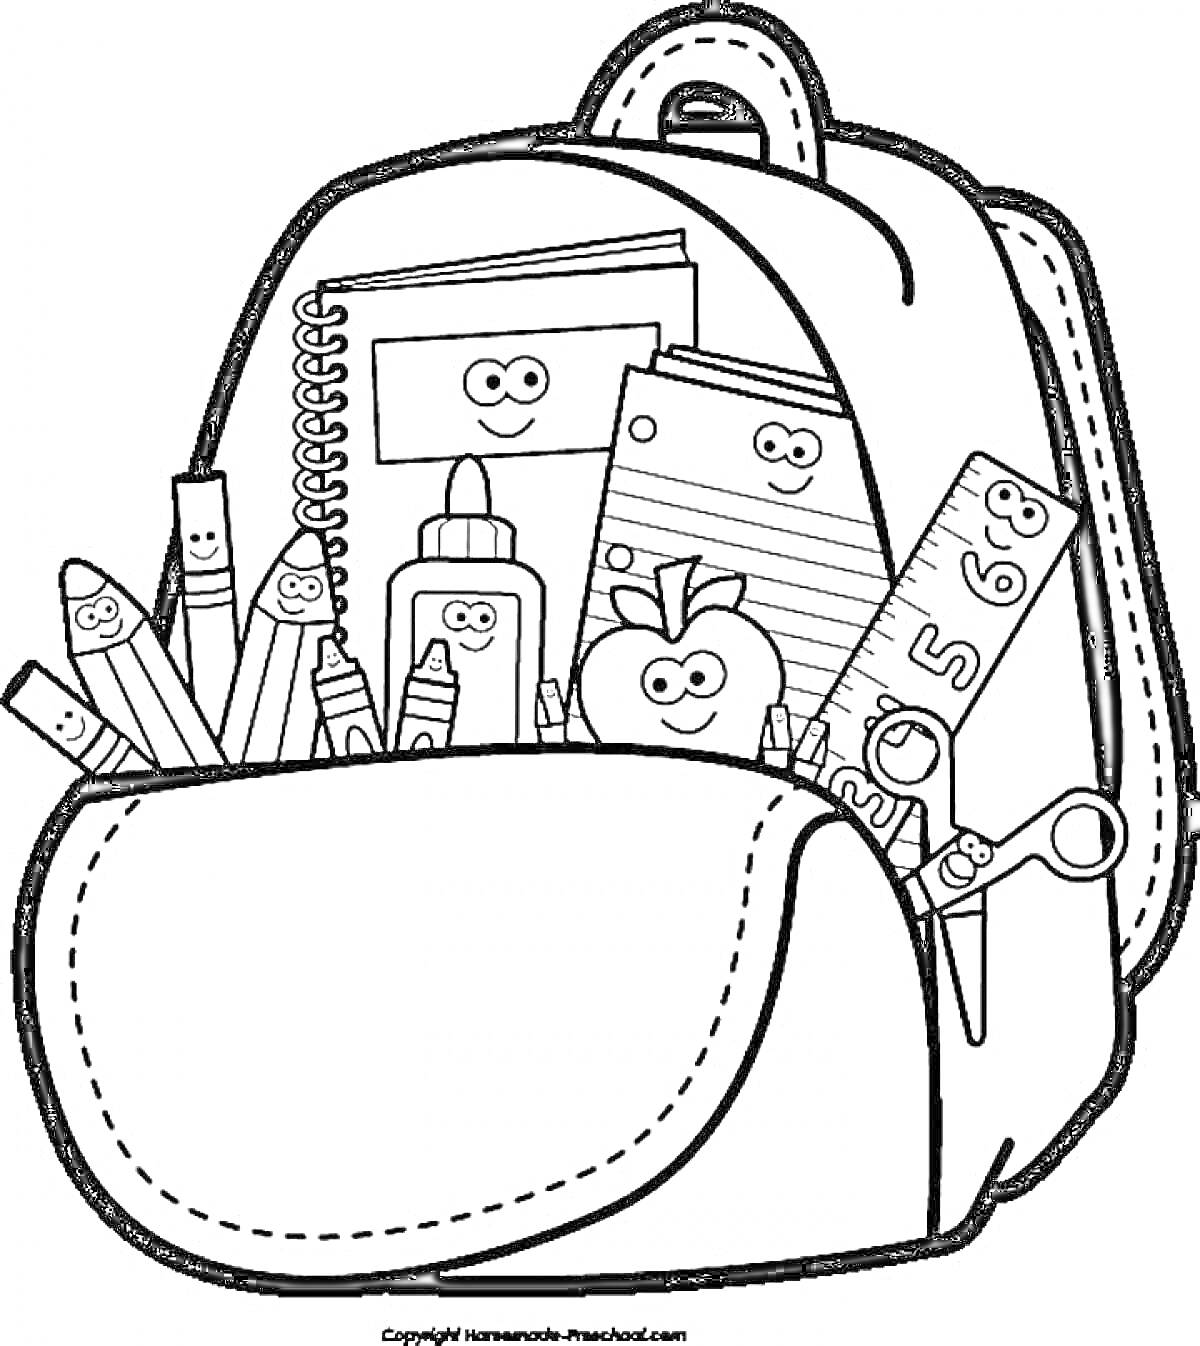 Раскраска Рюкзак с принадлежностями для учебы, содержащий карандаши, клей, линейку, блокнот, яблоко, ножницы и бумагу